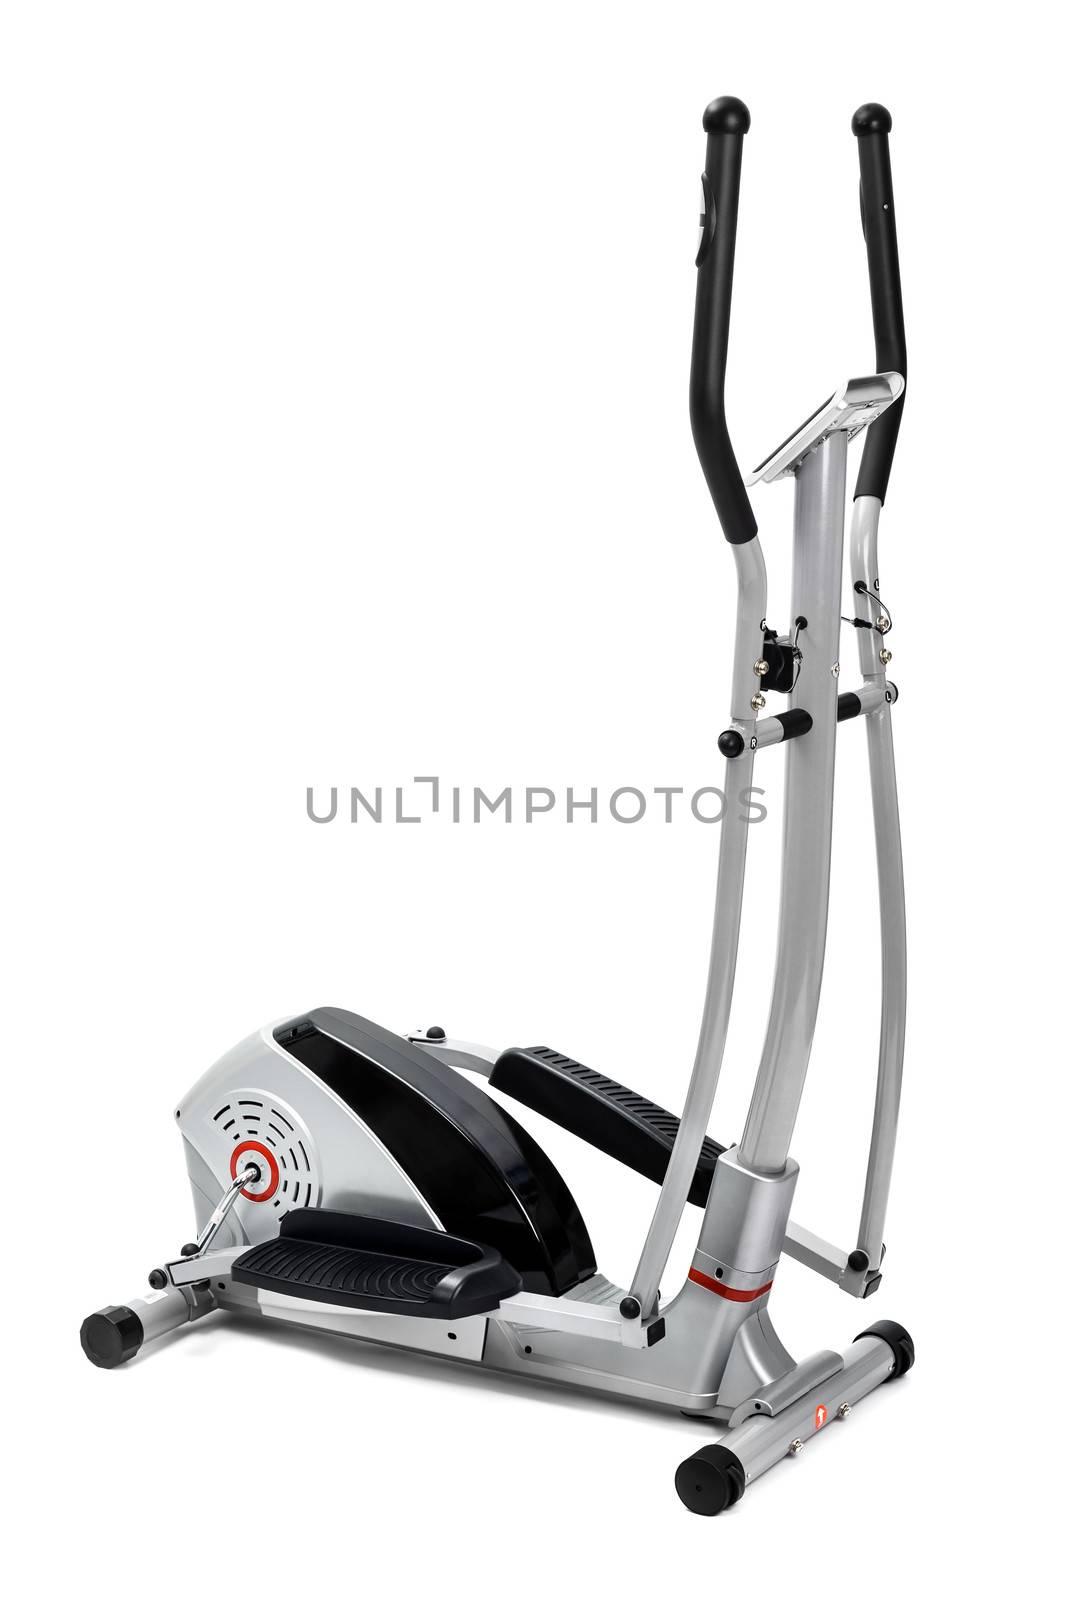 elliptical trainer machine, isolated on white background